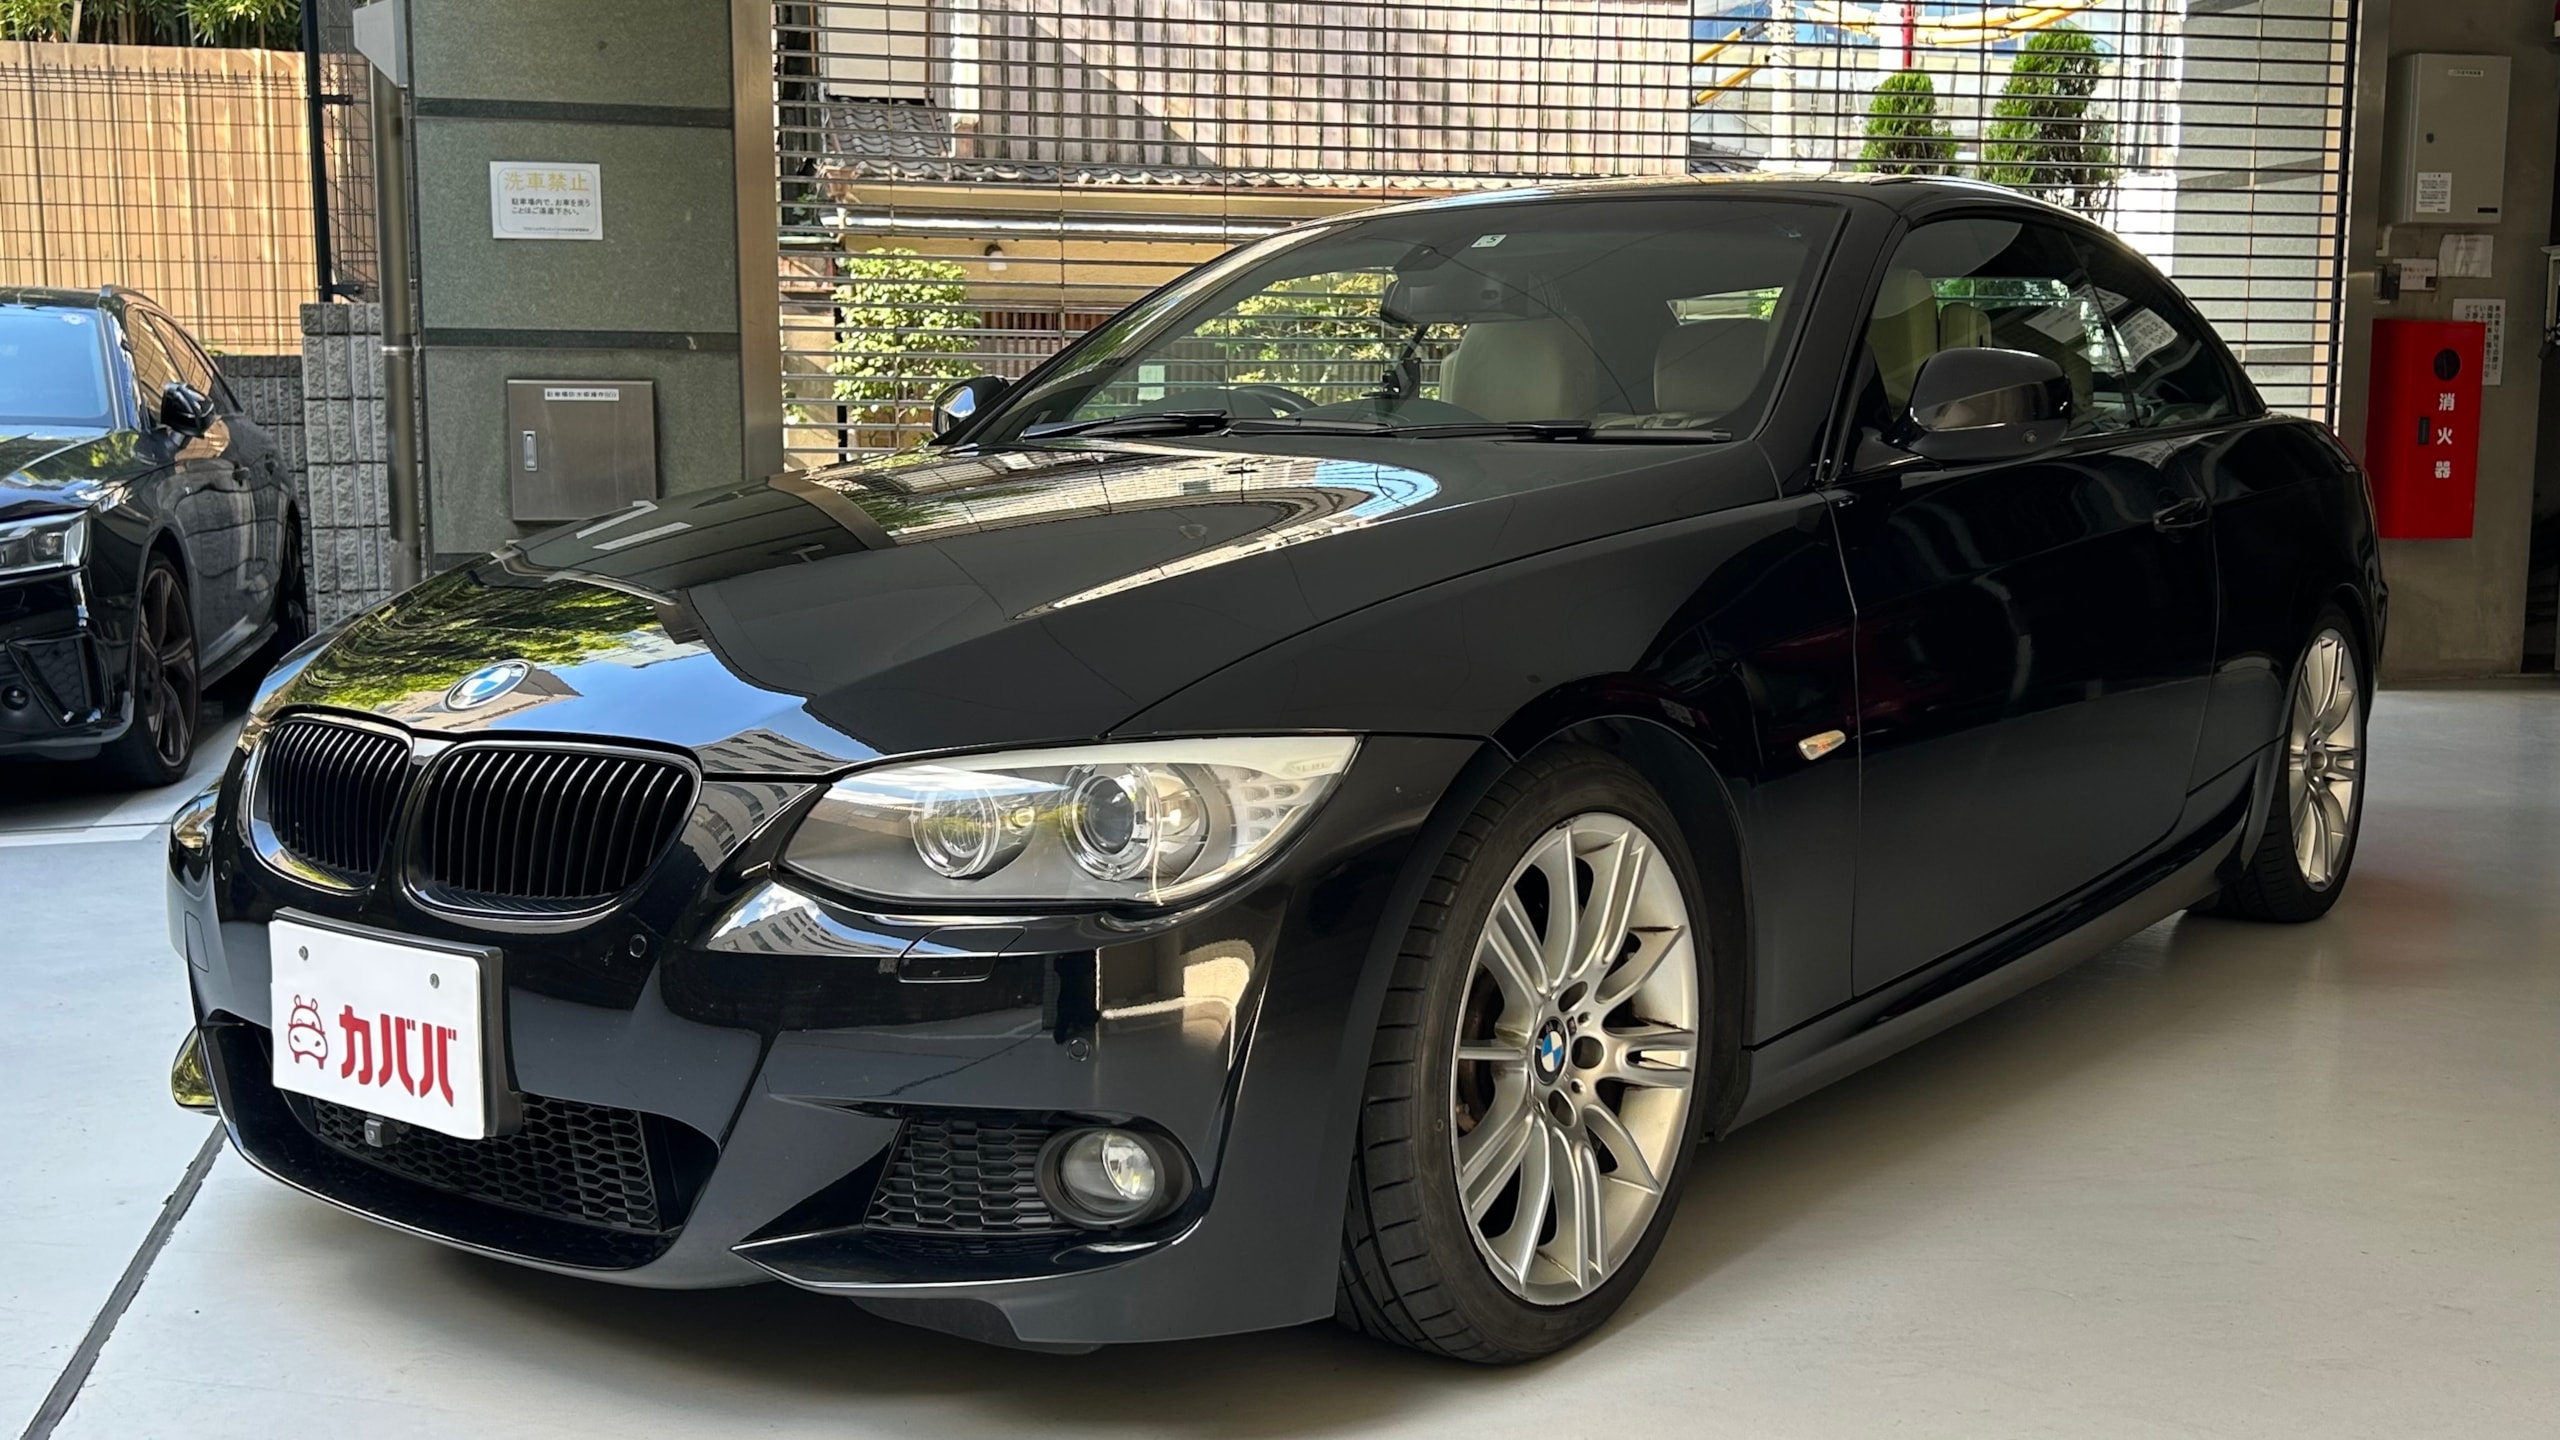 3シリーズ 335i カブリオレ Mスポーツパッケージ(BMW)2013年式 165万円